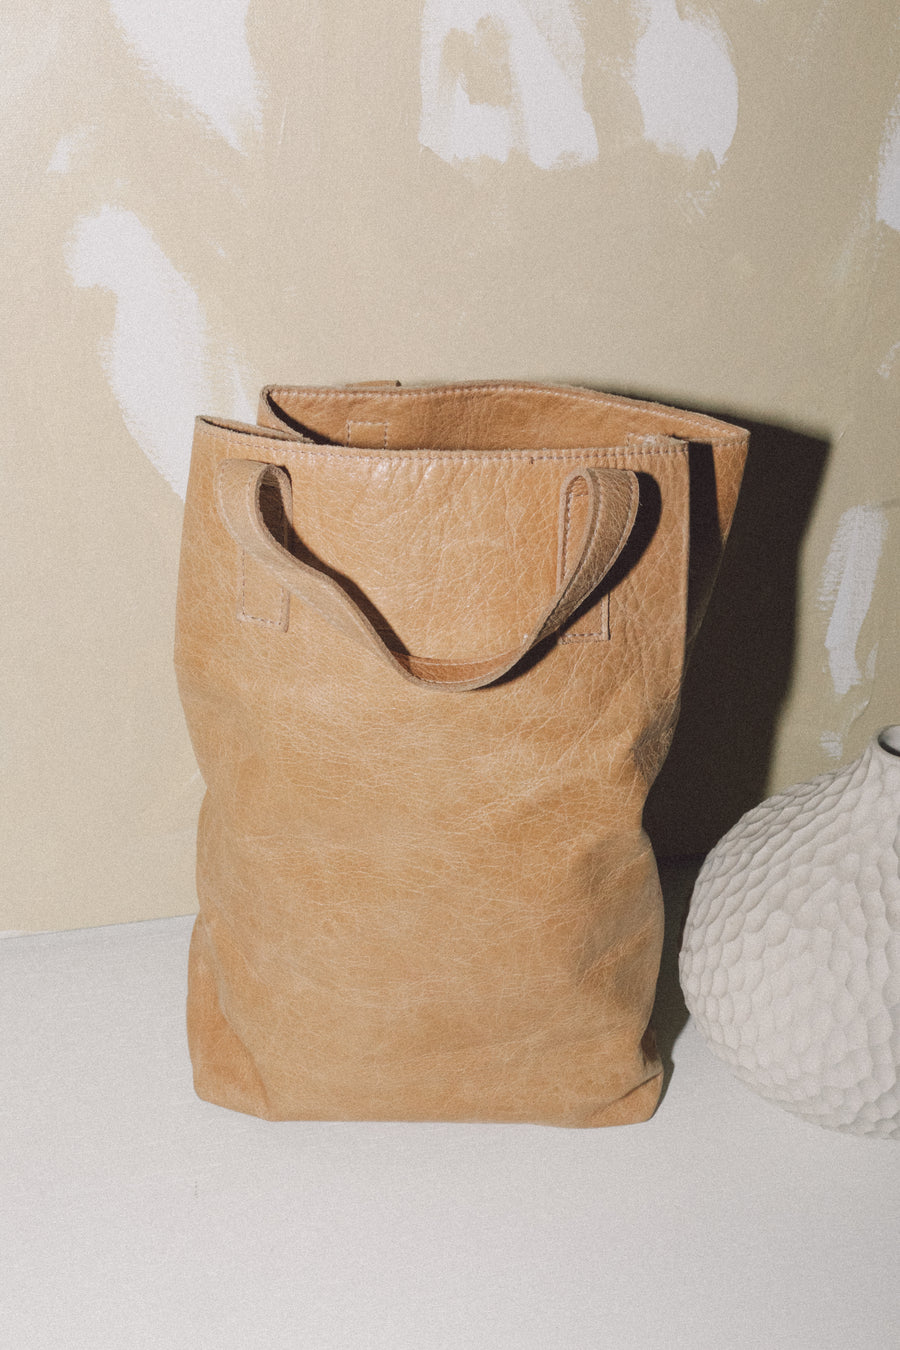 The Deli Bag — Tan